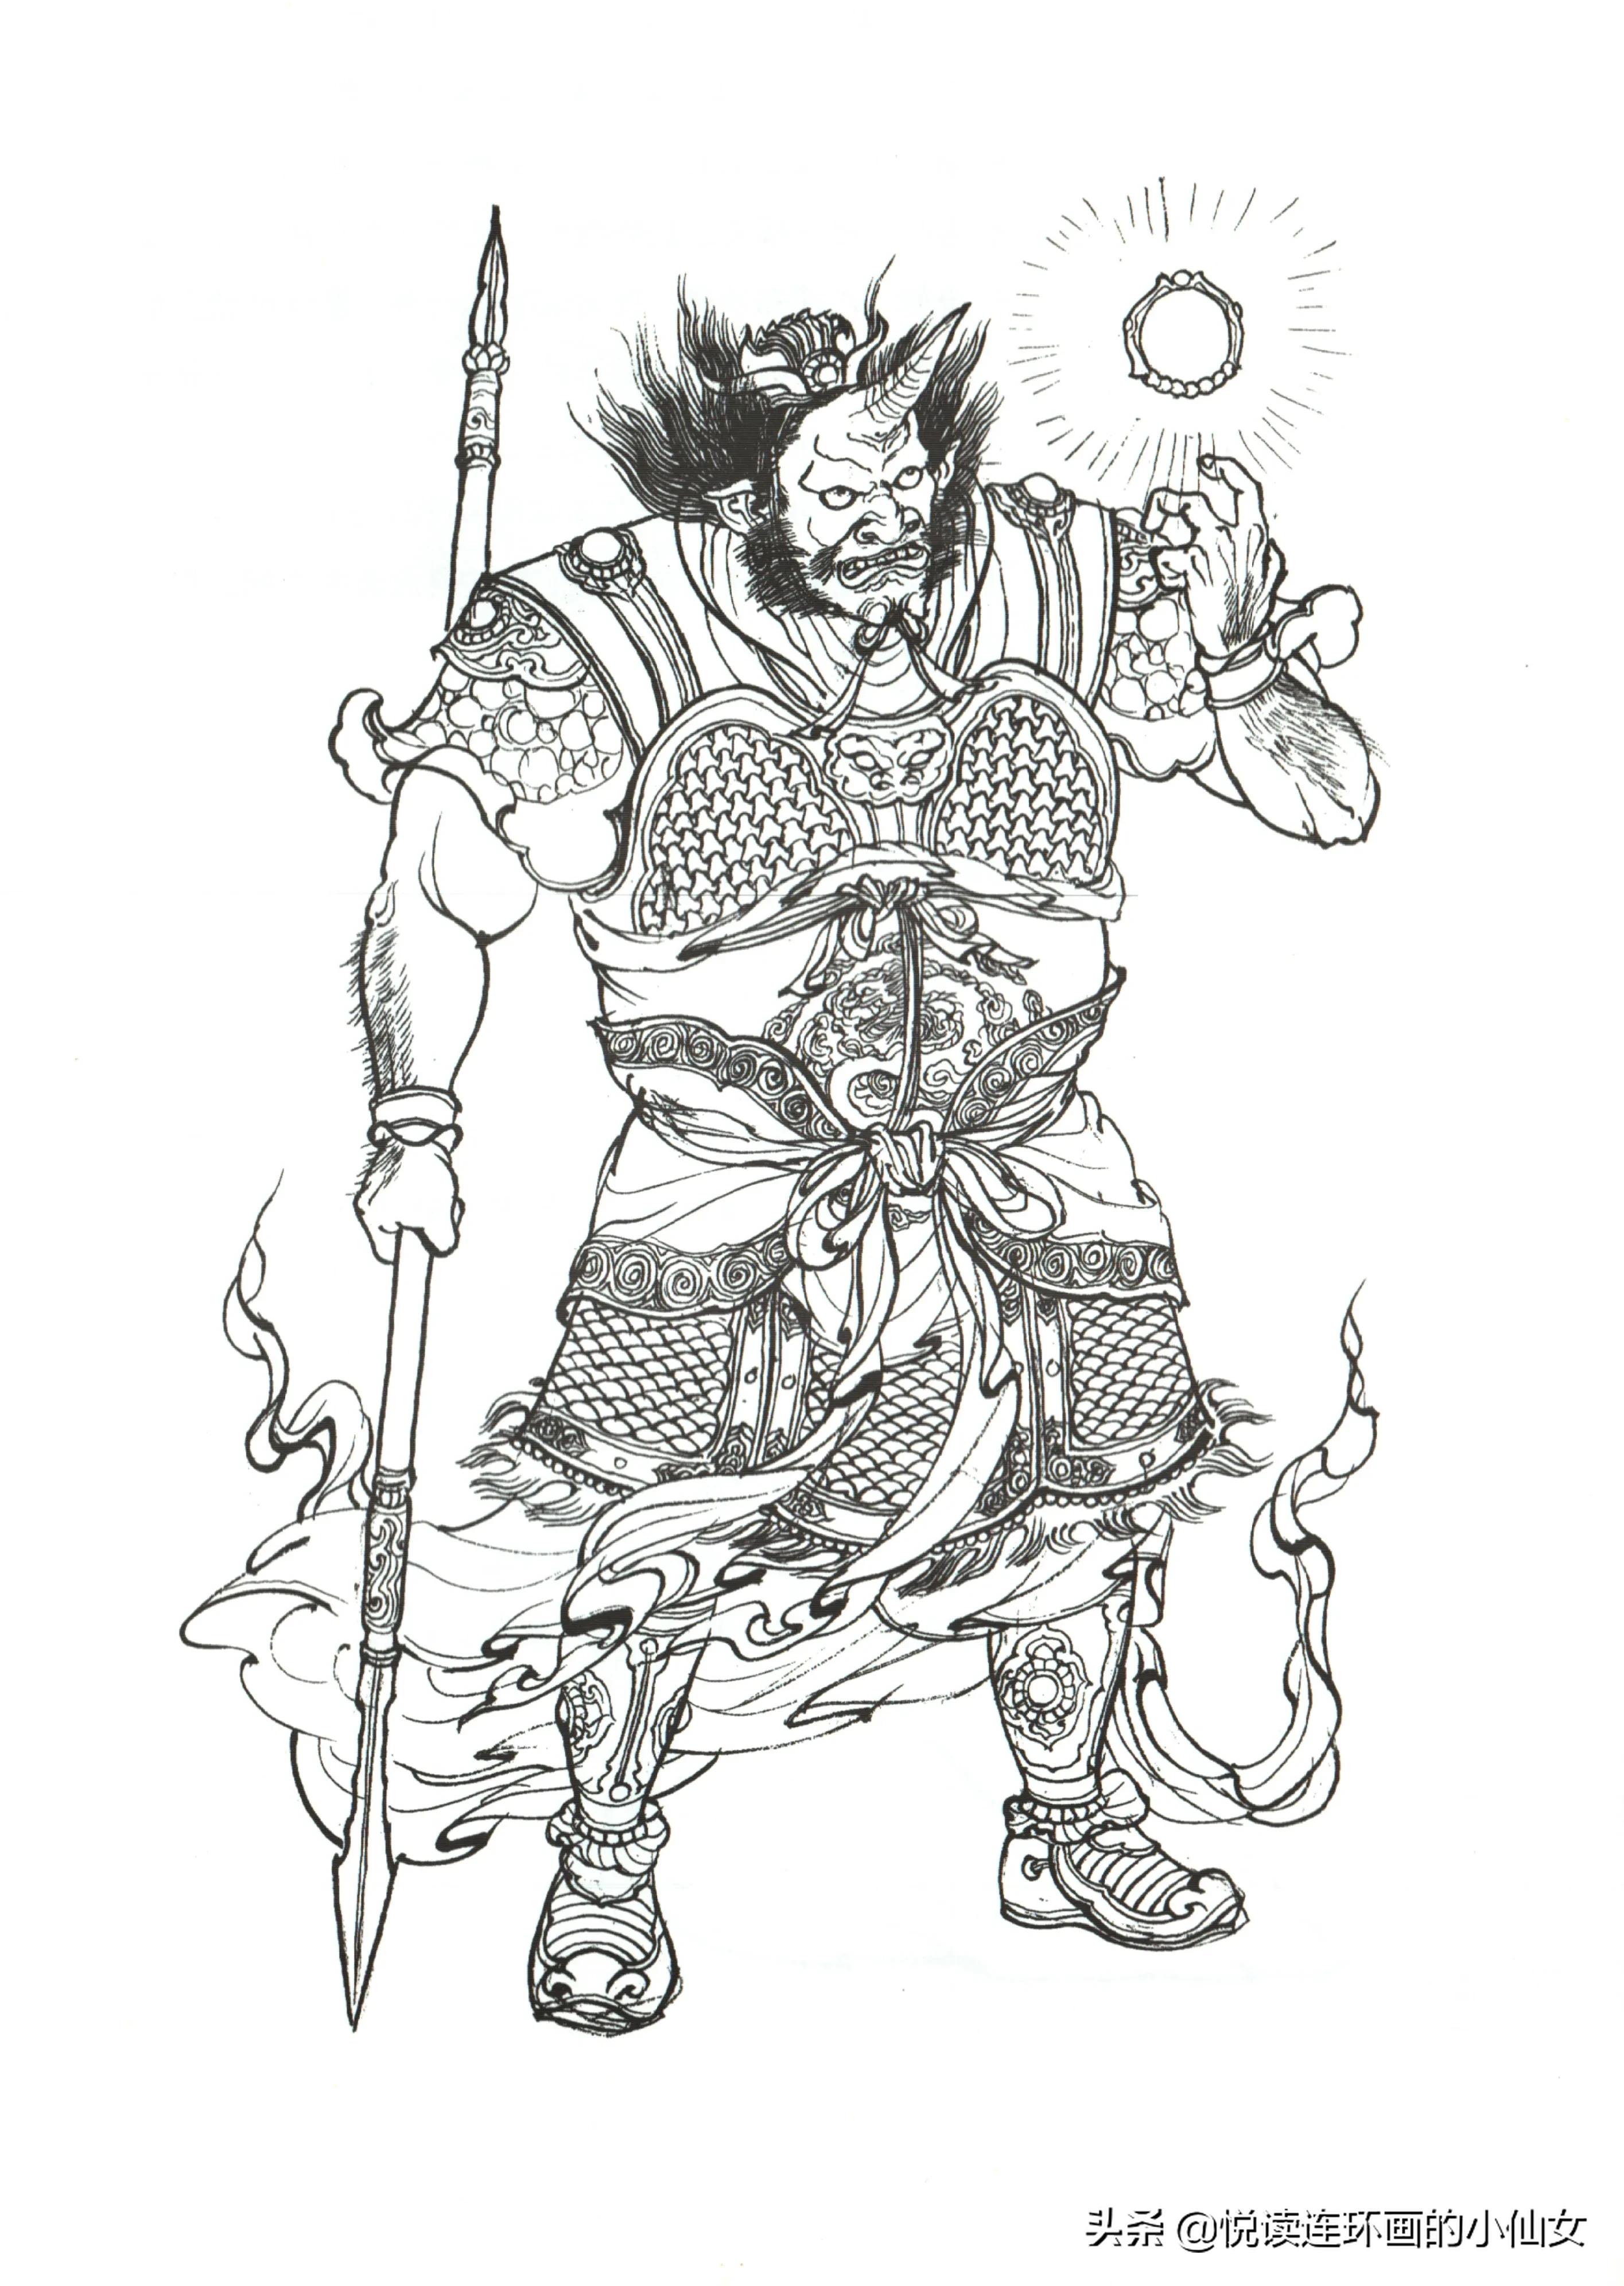 西游记神魔人物画谱，李云中绘插图(149)